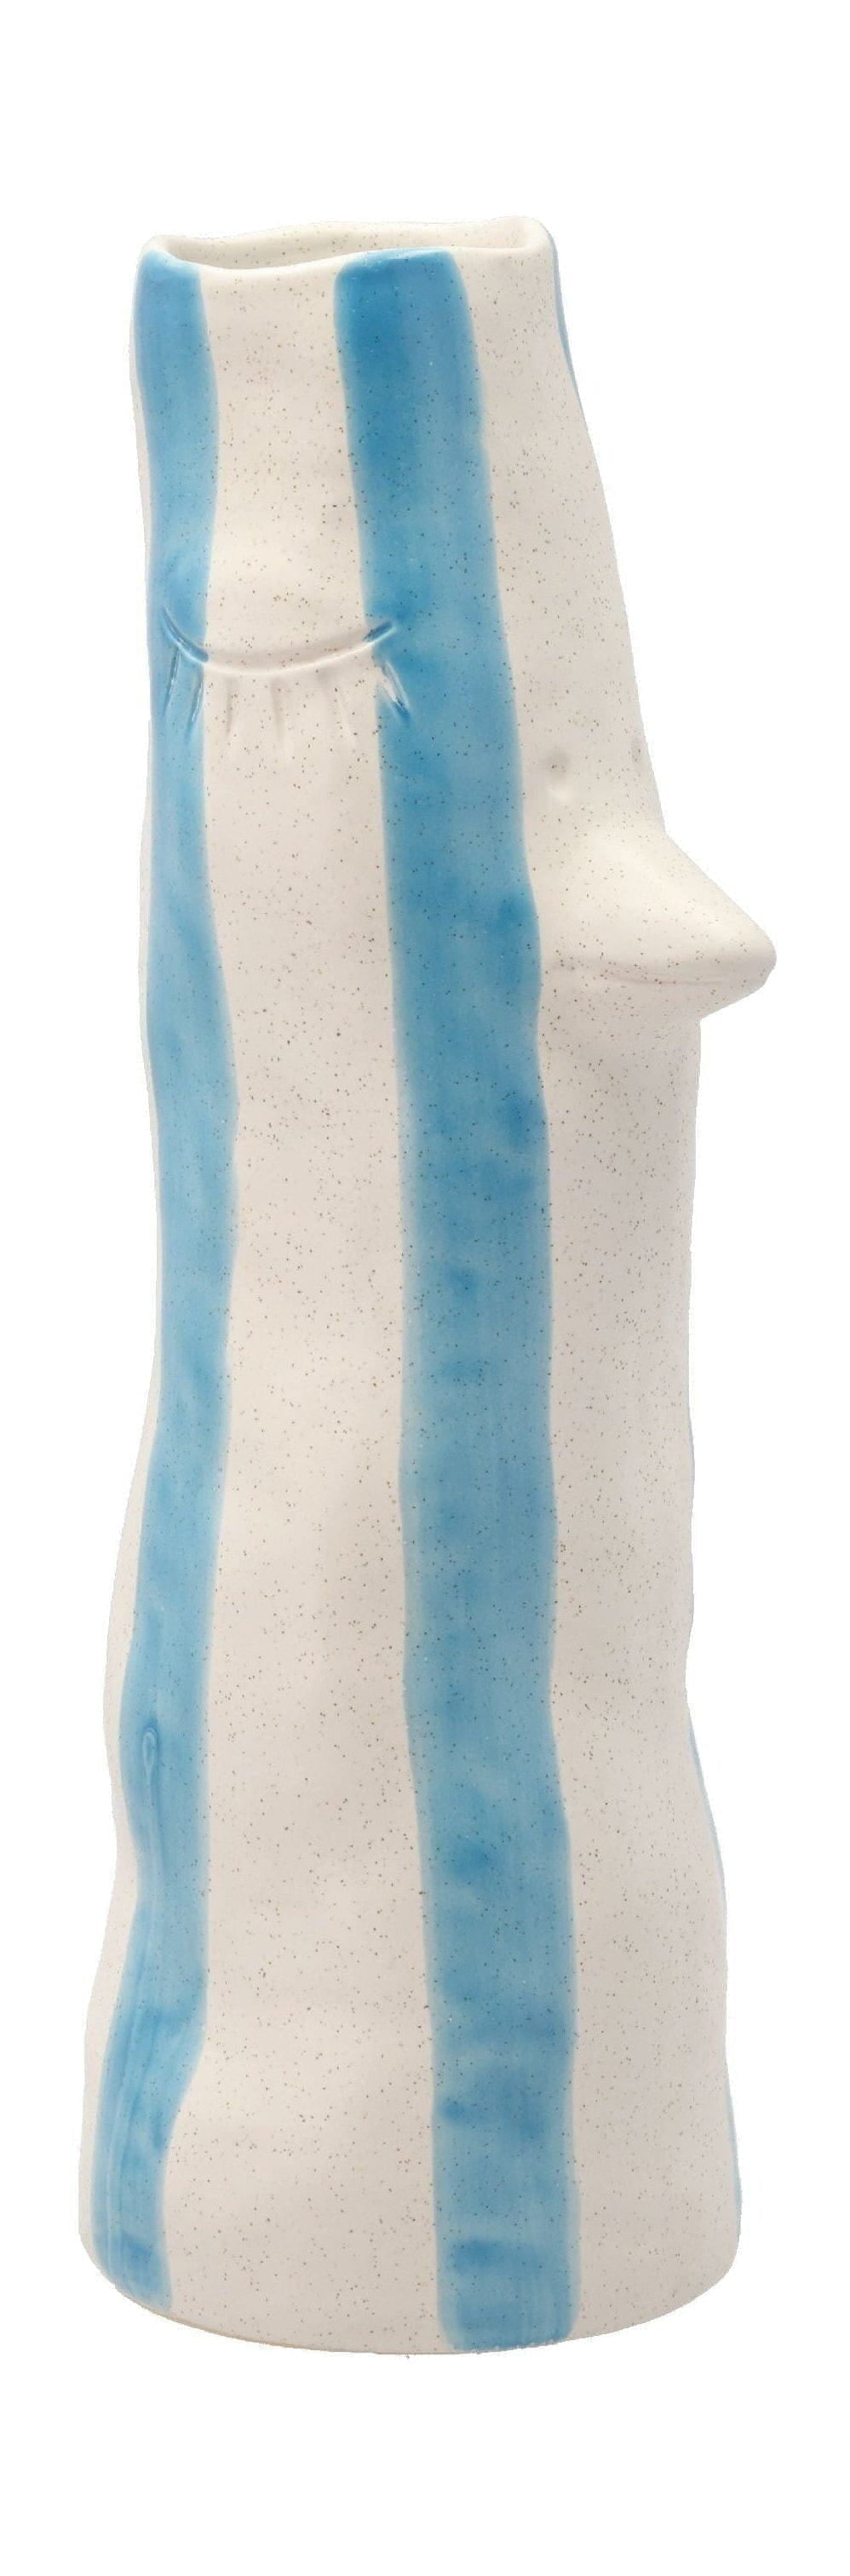 Villa -Kollektionsstil Vase mit Schnabel und Wimpern groß, blau